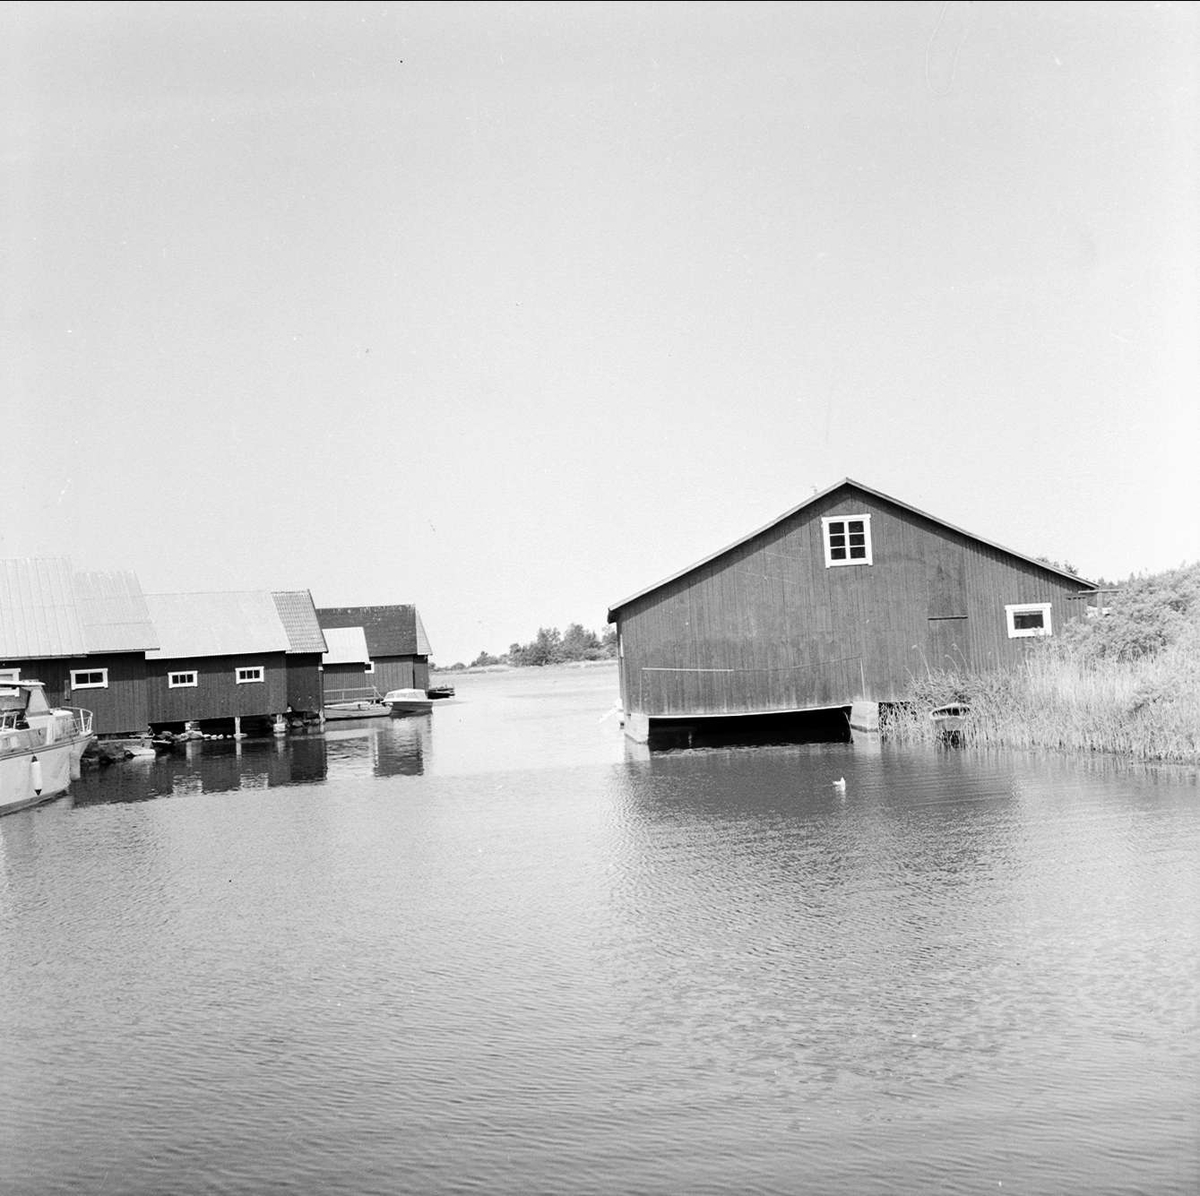 "Prov visar bättre vatten", Tierps kommun, Uppland 1973